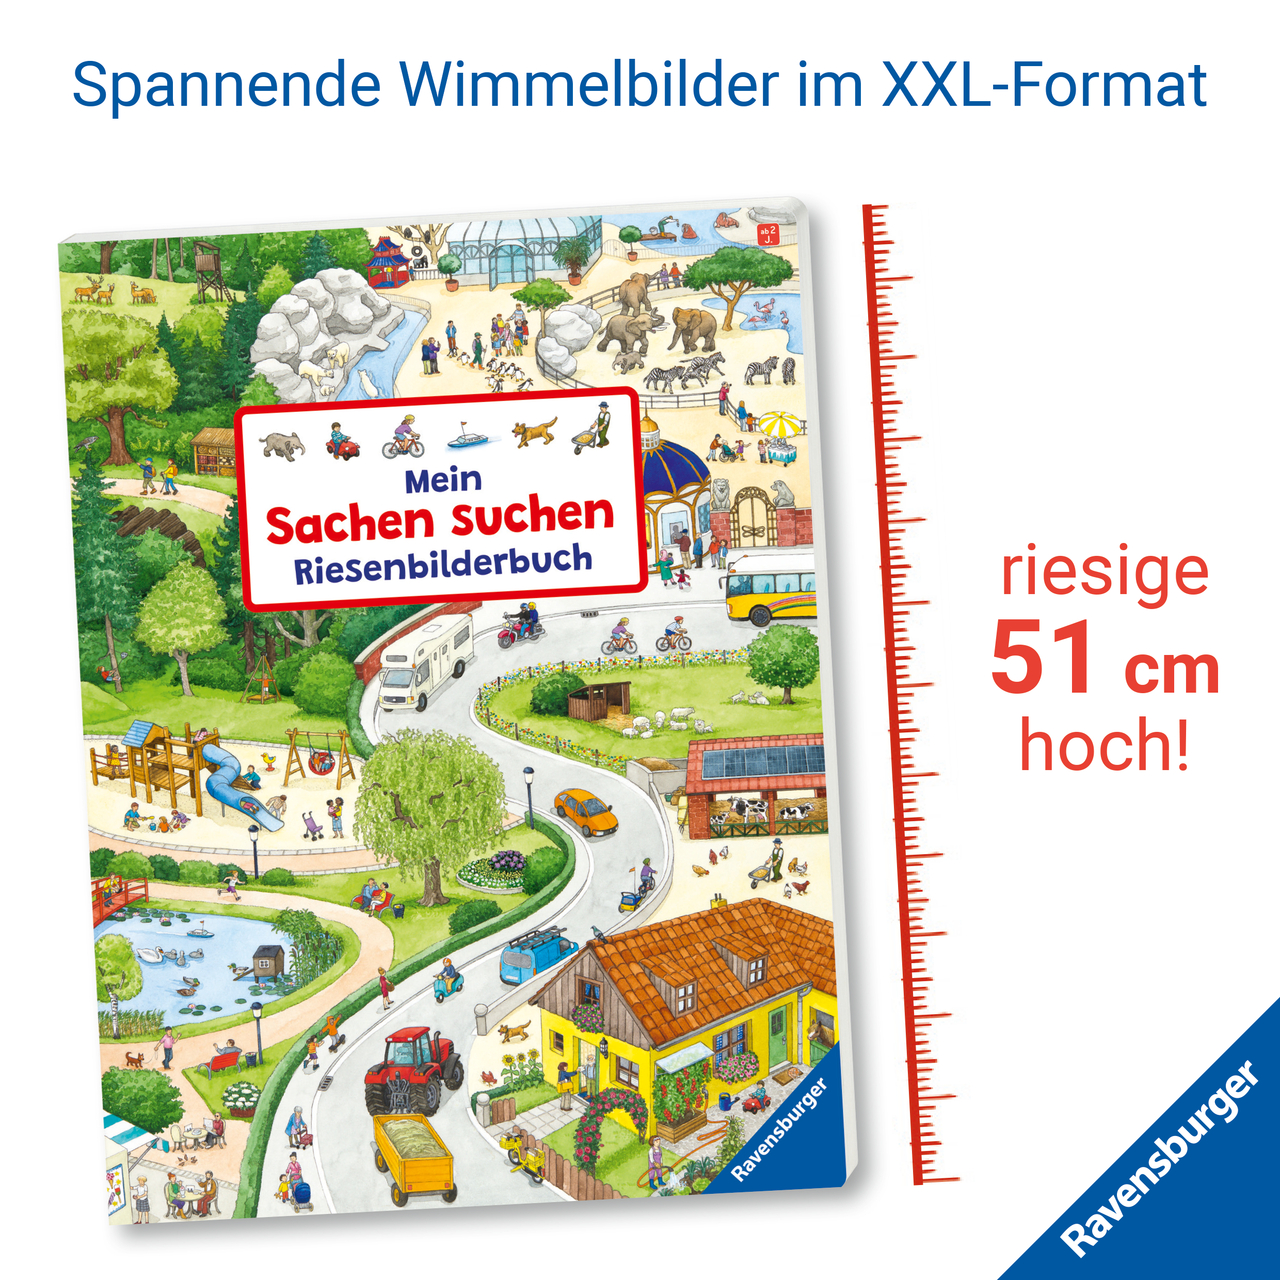 Mein Sachen suchen Riesenbilderbuch von Susanne Gernhäuser (Pappeinband)